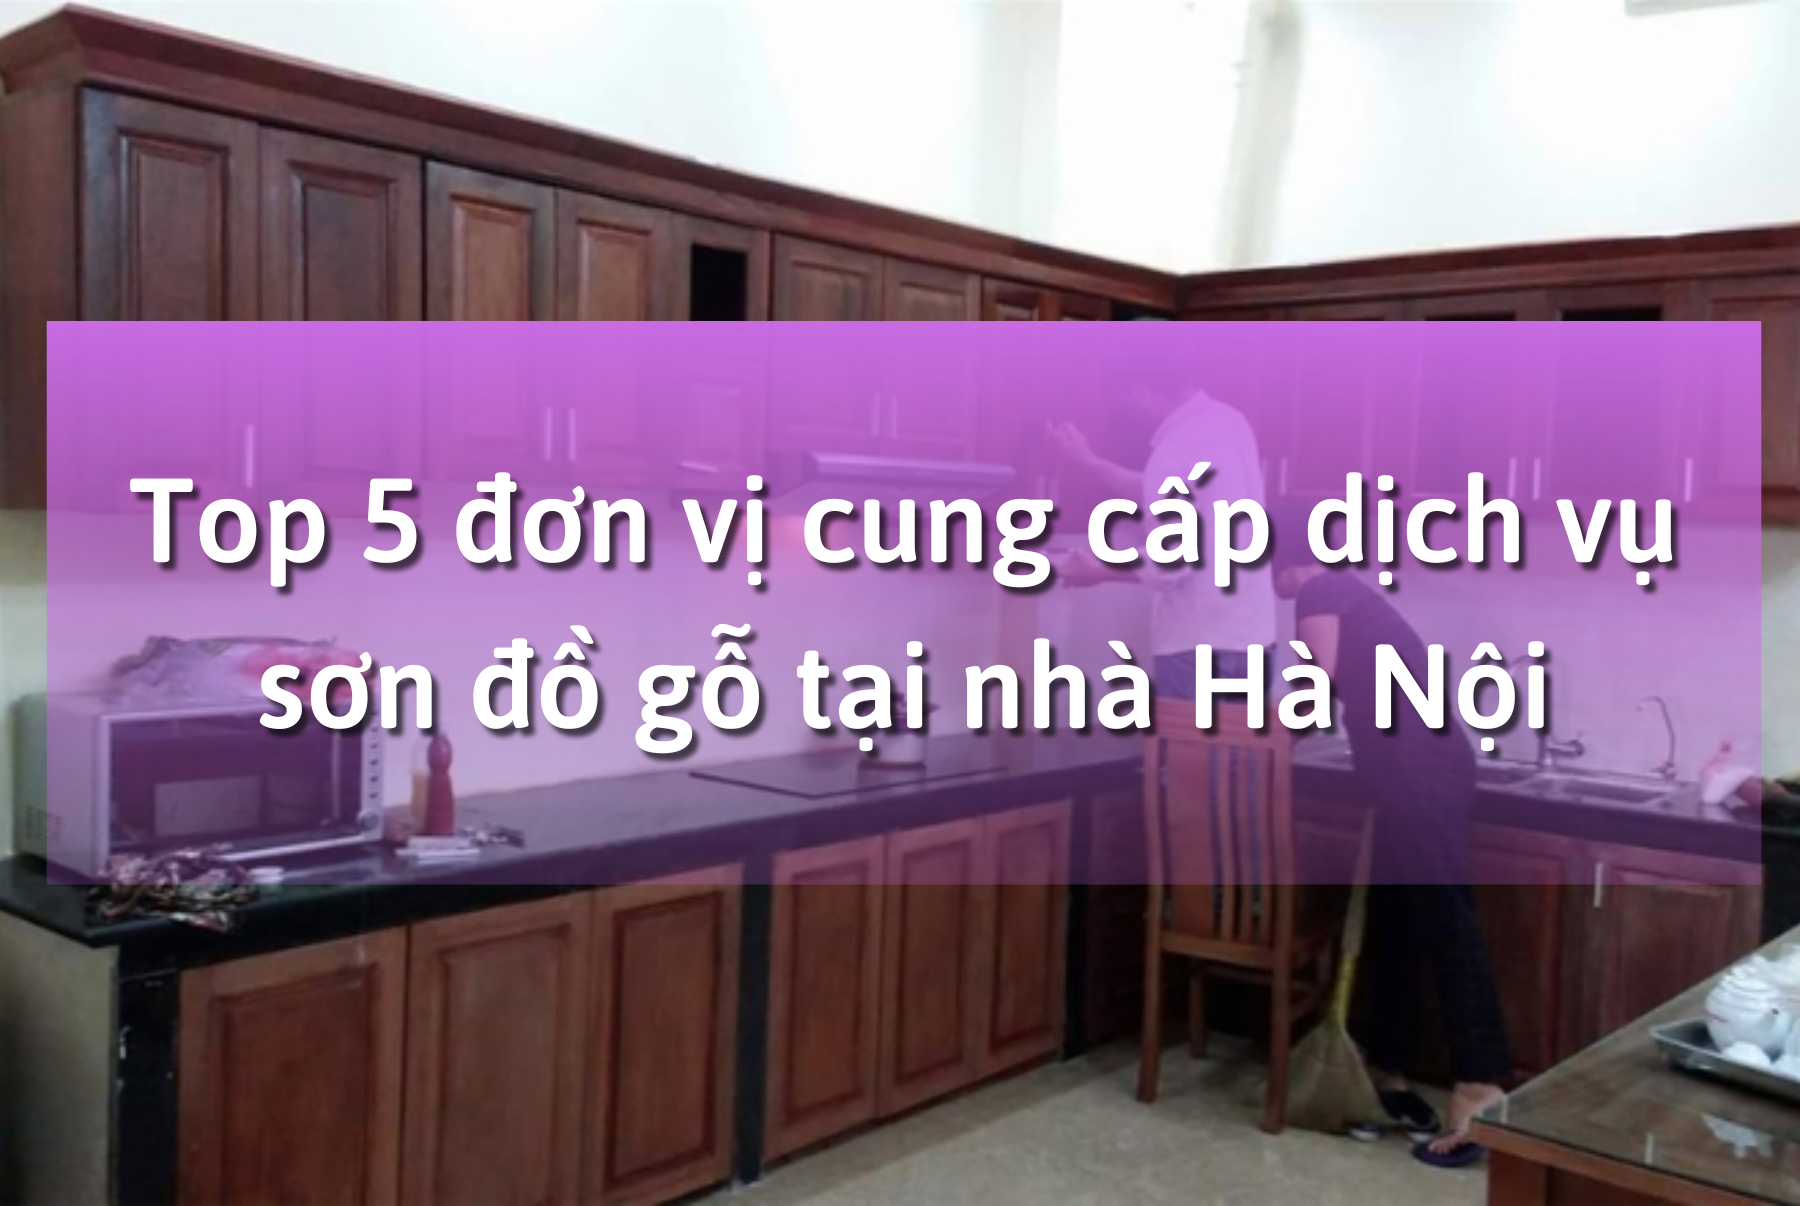 Top 5 đơn vị cung cấp dịch vụ sơn đồ gỗ tại nhà Hà Nội